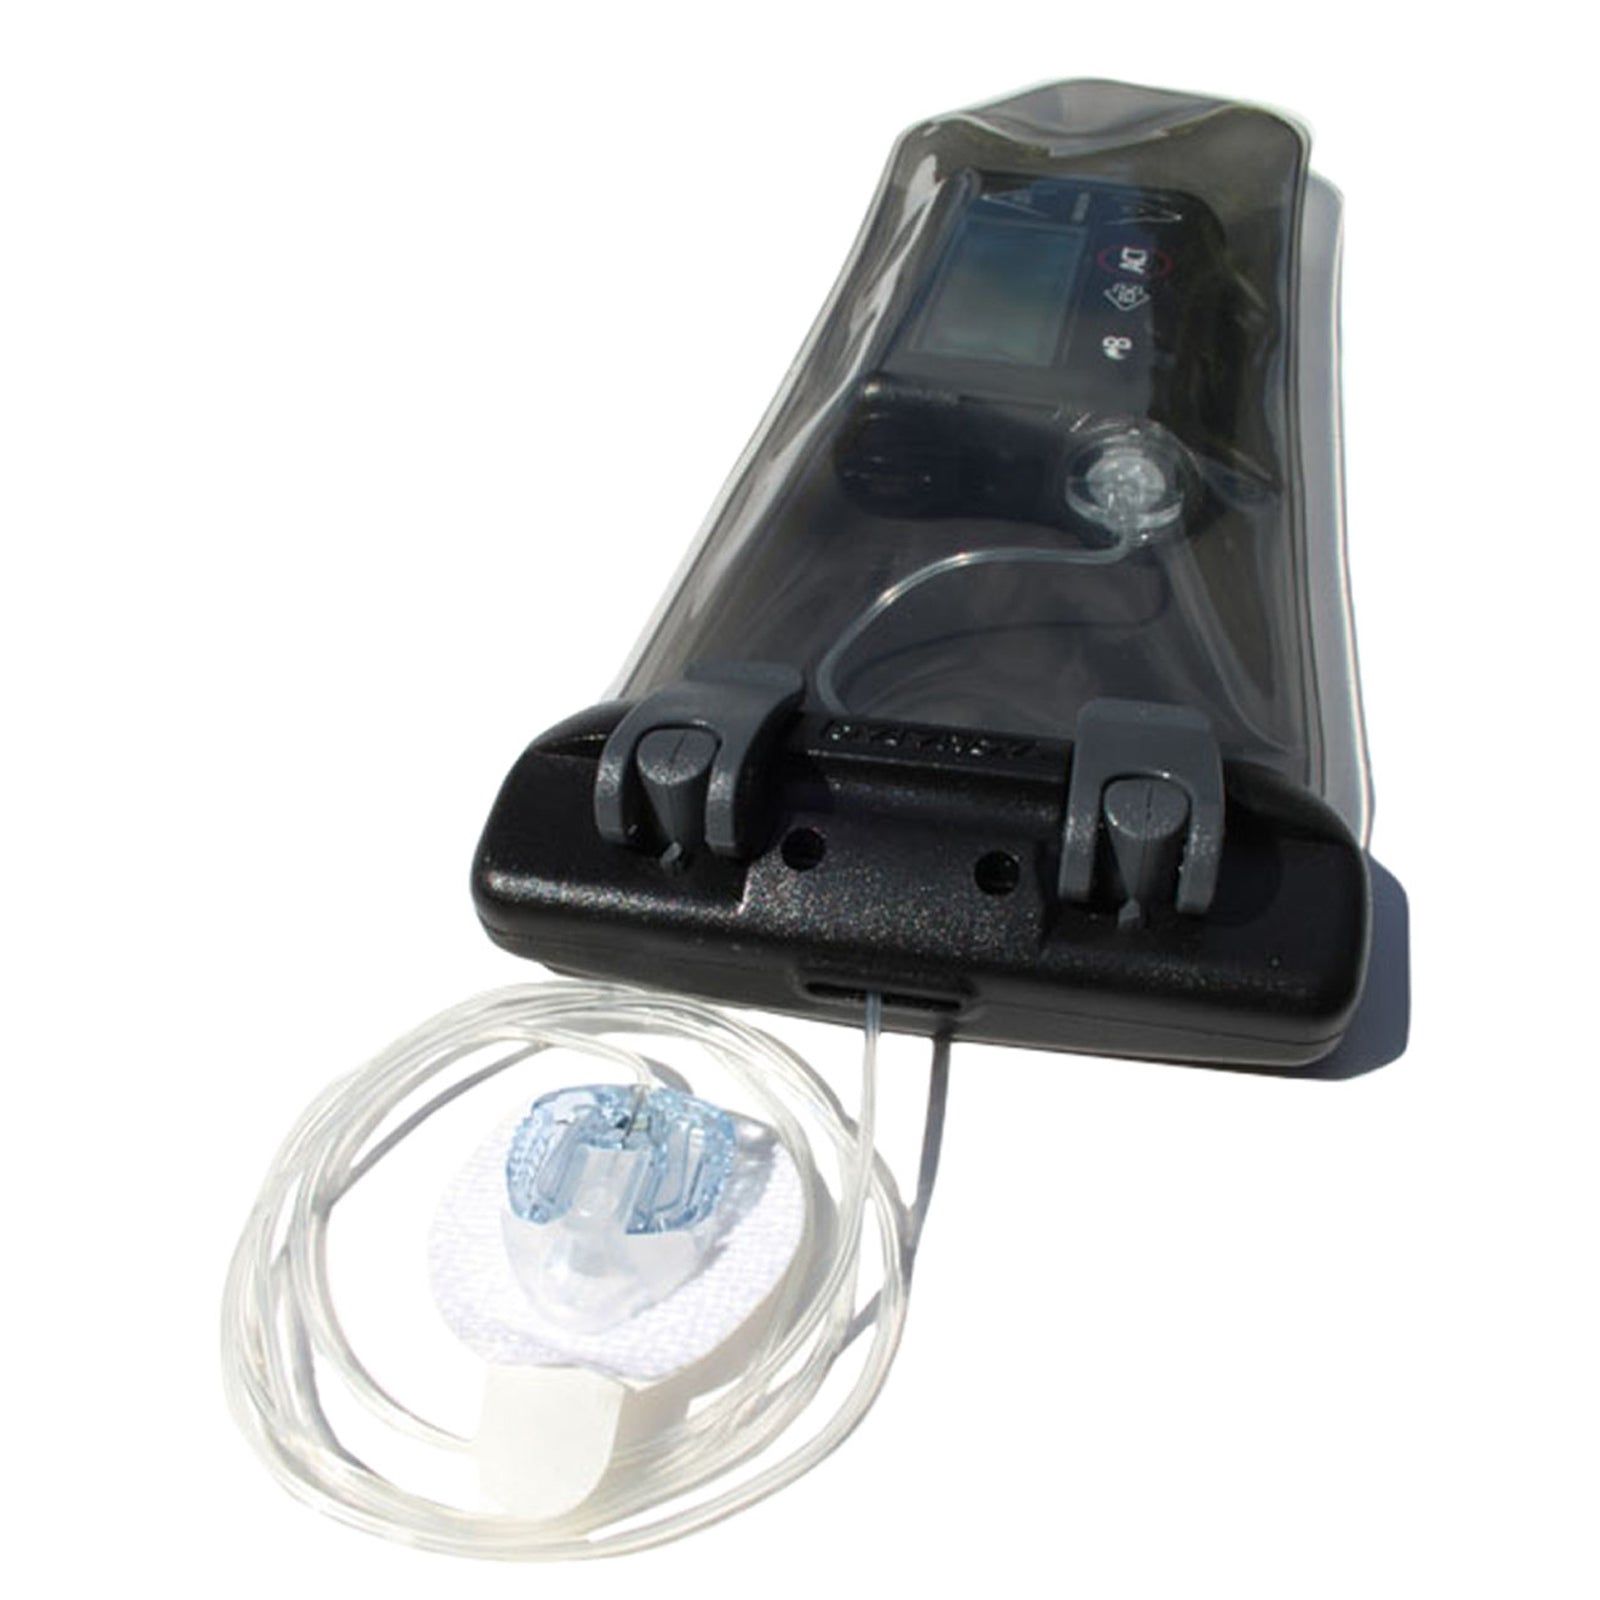 Aquapac Insulin Pump Case Waterproof Case